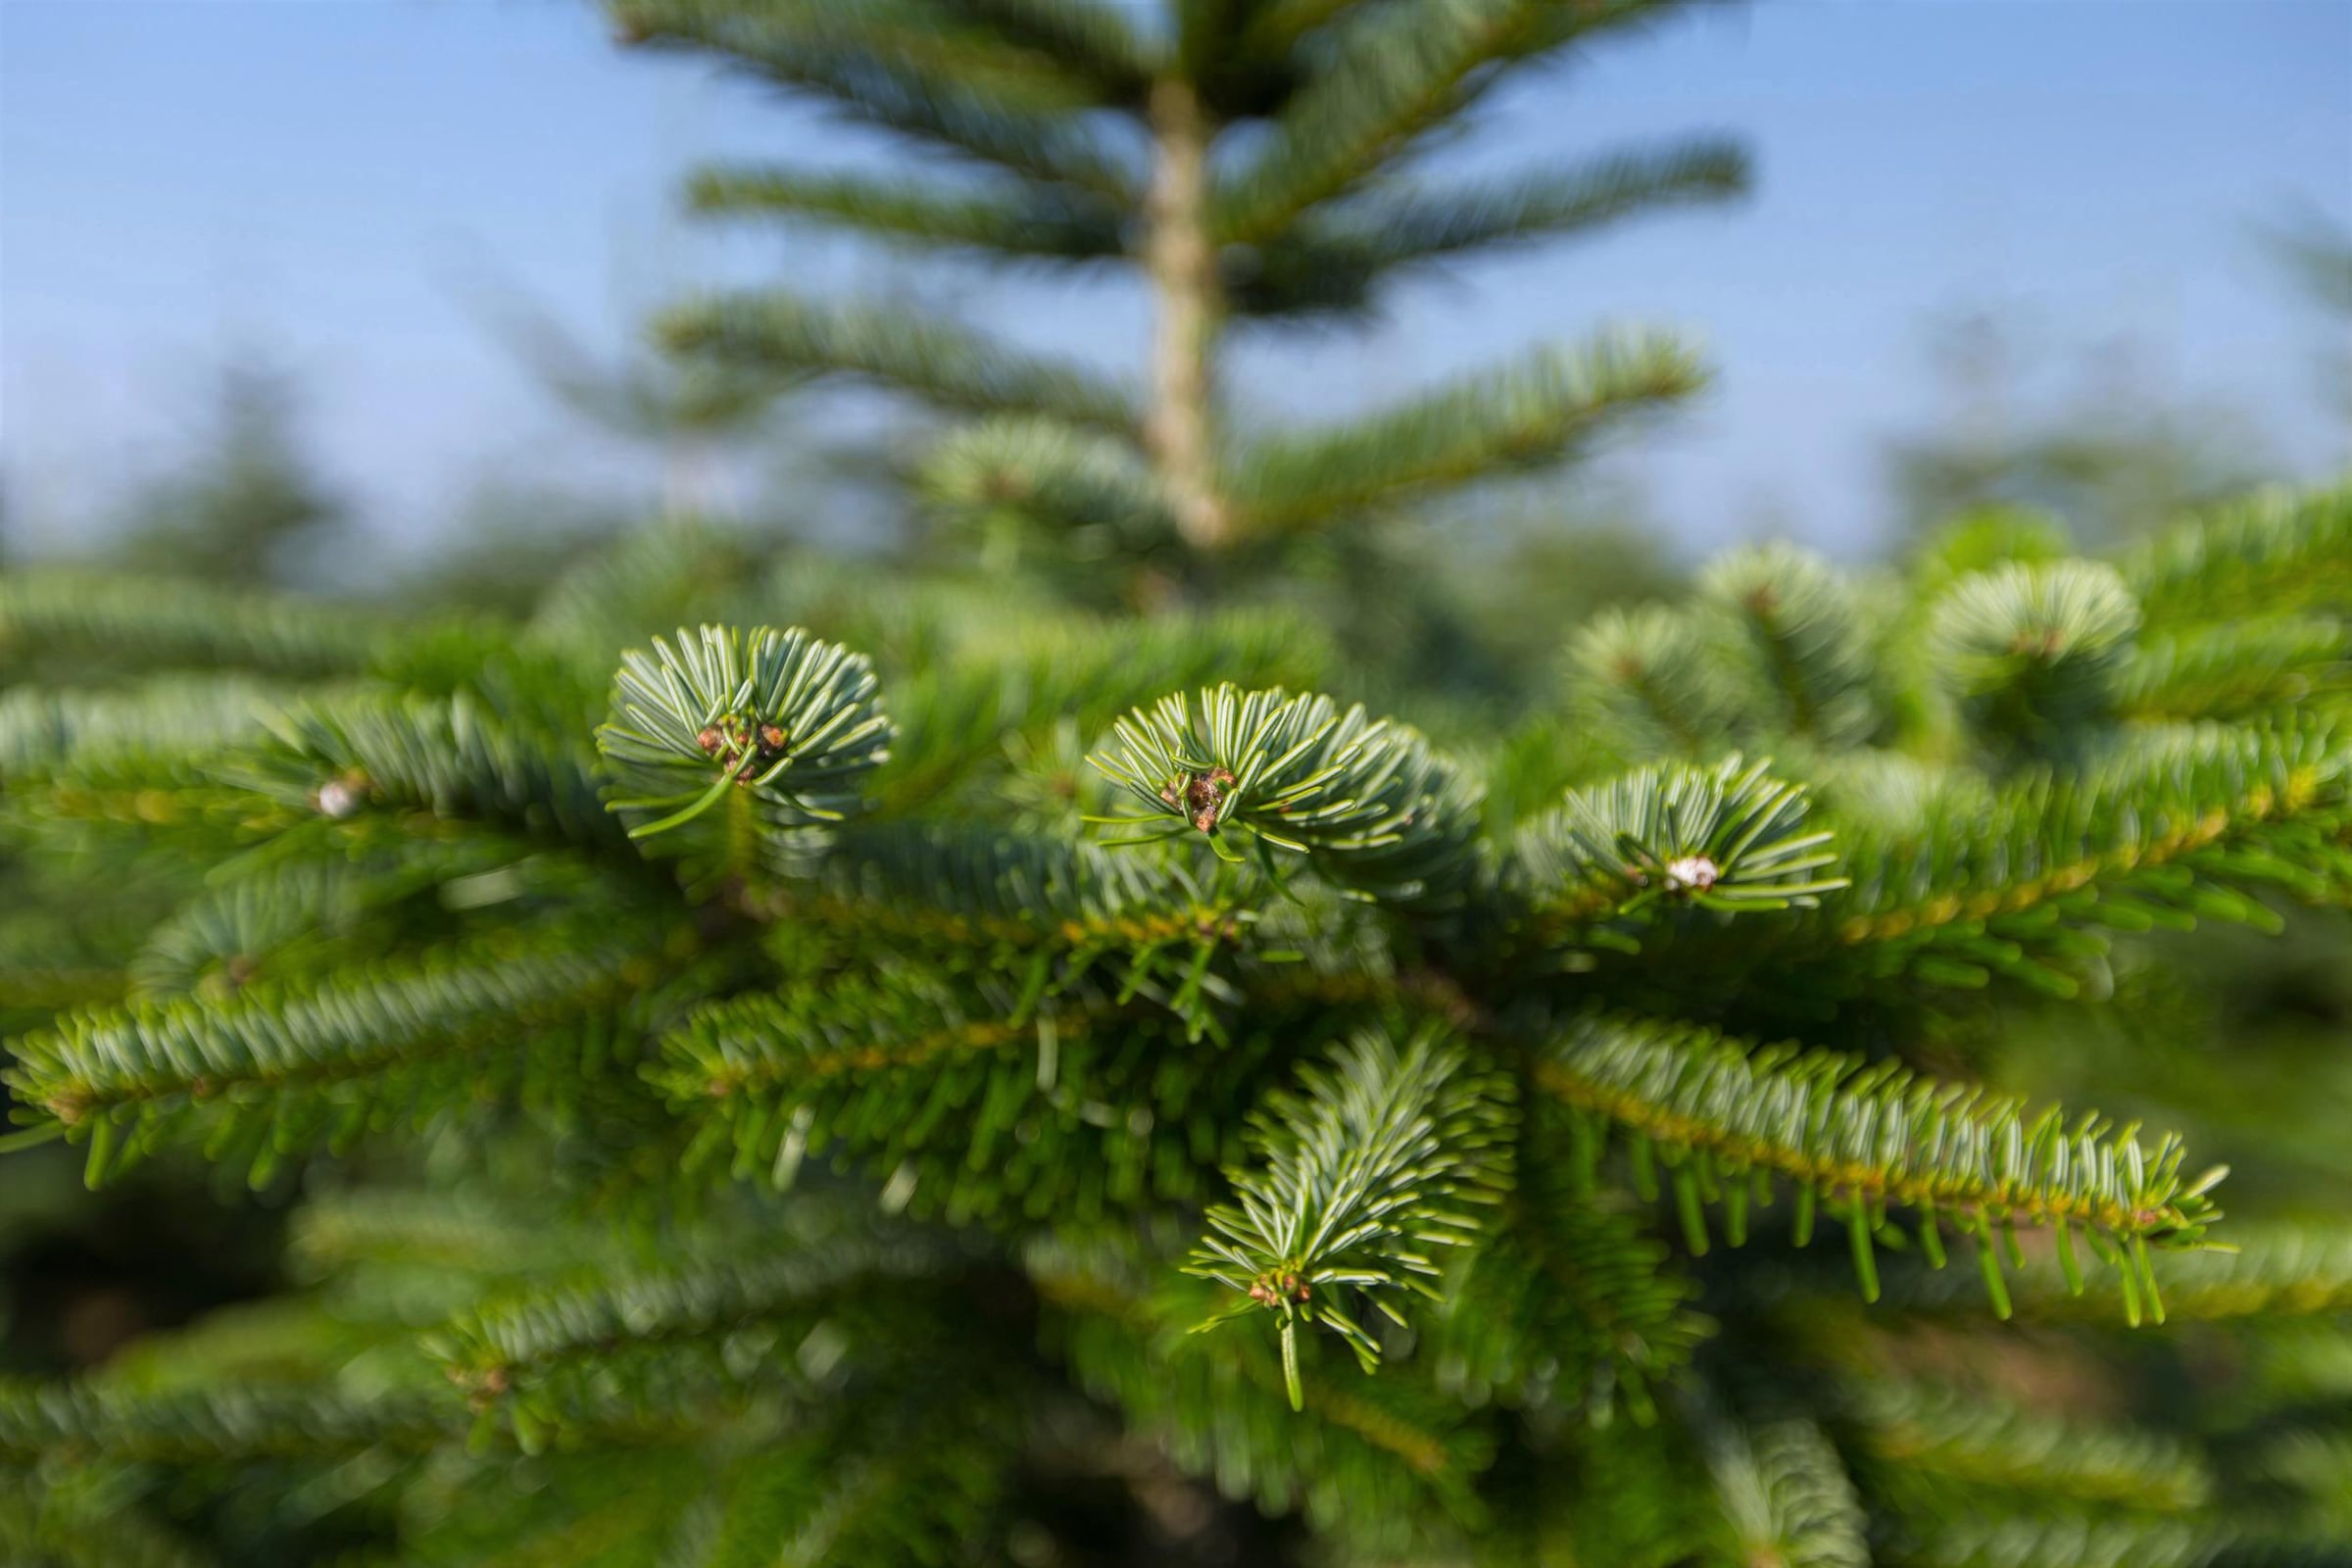 Weihnachtsbaumland Echter Weihnachtsbaum »Echte Nordmanntanne zum Einpflanzen, Weihnachtsdeko aussen«, im Topf gewachsen